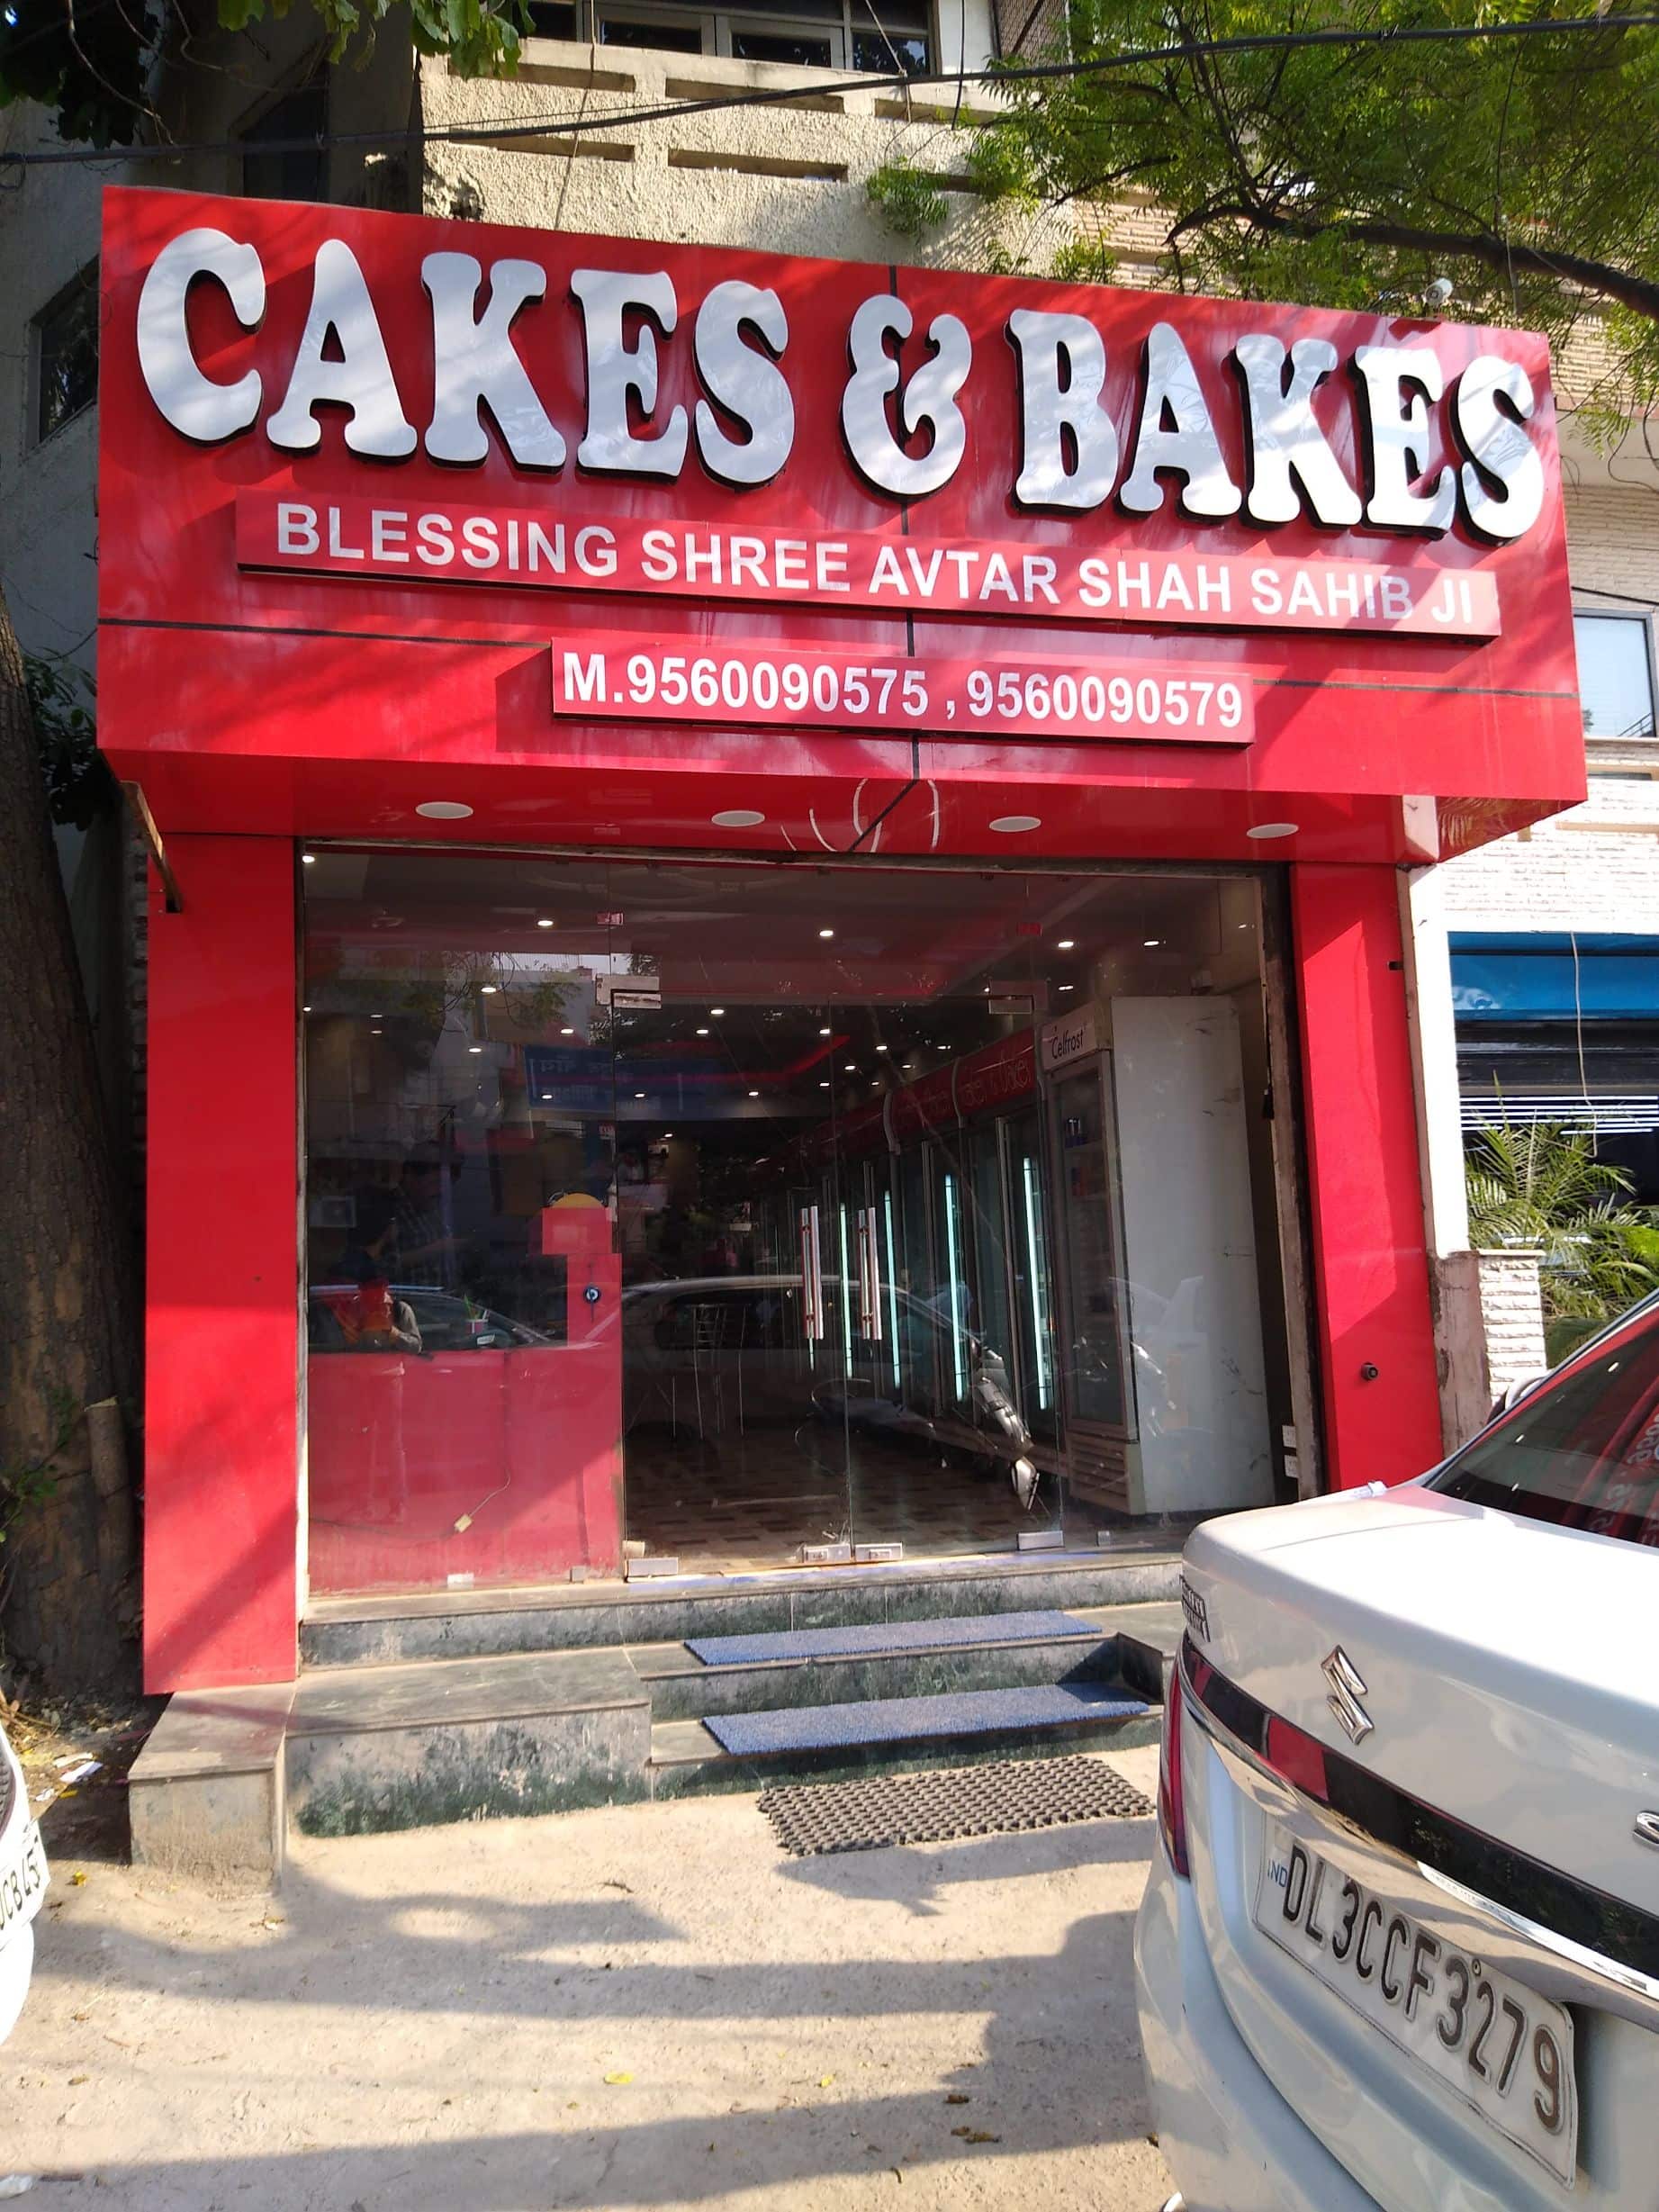 Mahesh Pawar - Cafe incharge - CAKES & BAKES LIMITED | LinkedIn